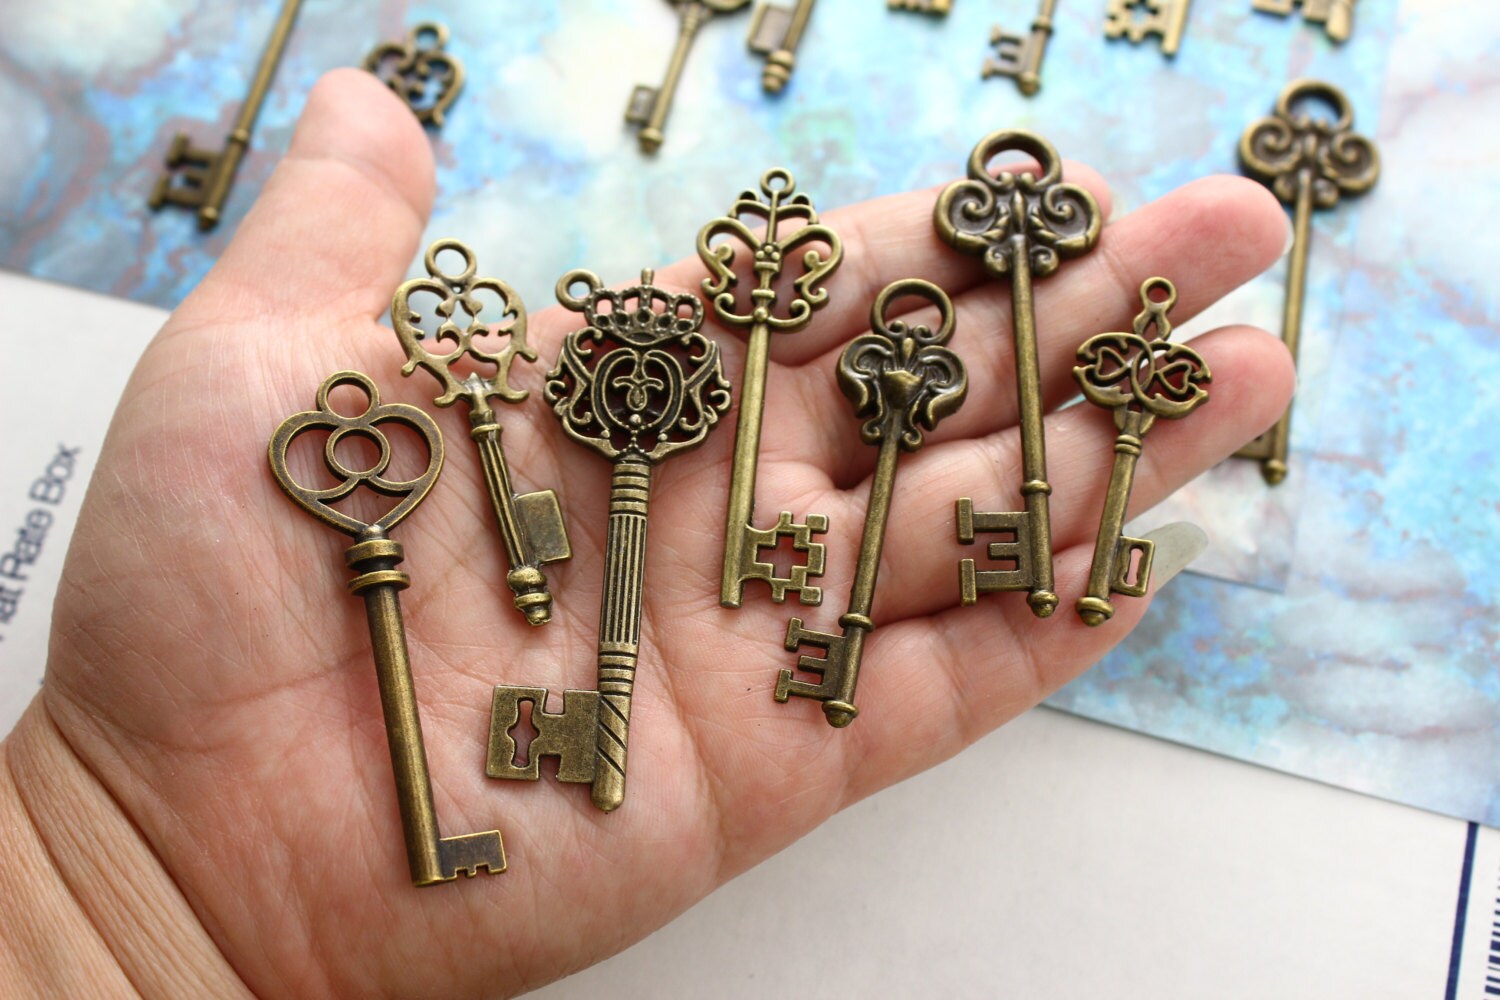 Set of 12 Large Skeleton Keys With 4 Locks on A Big Ring Antique